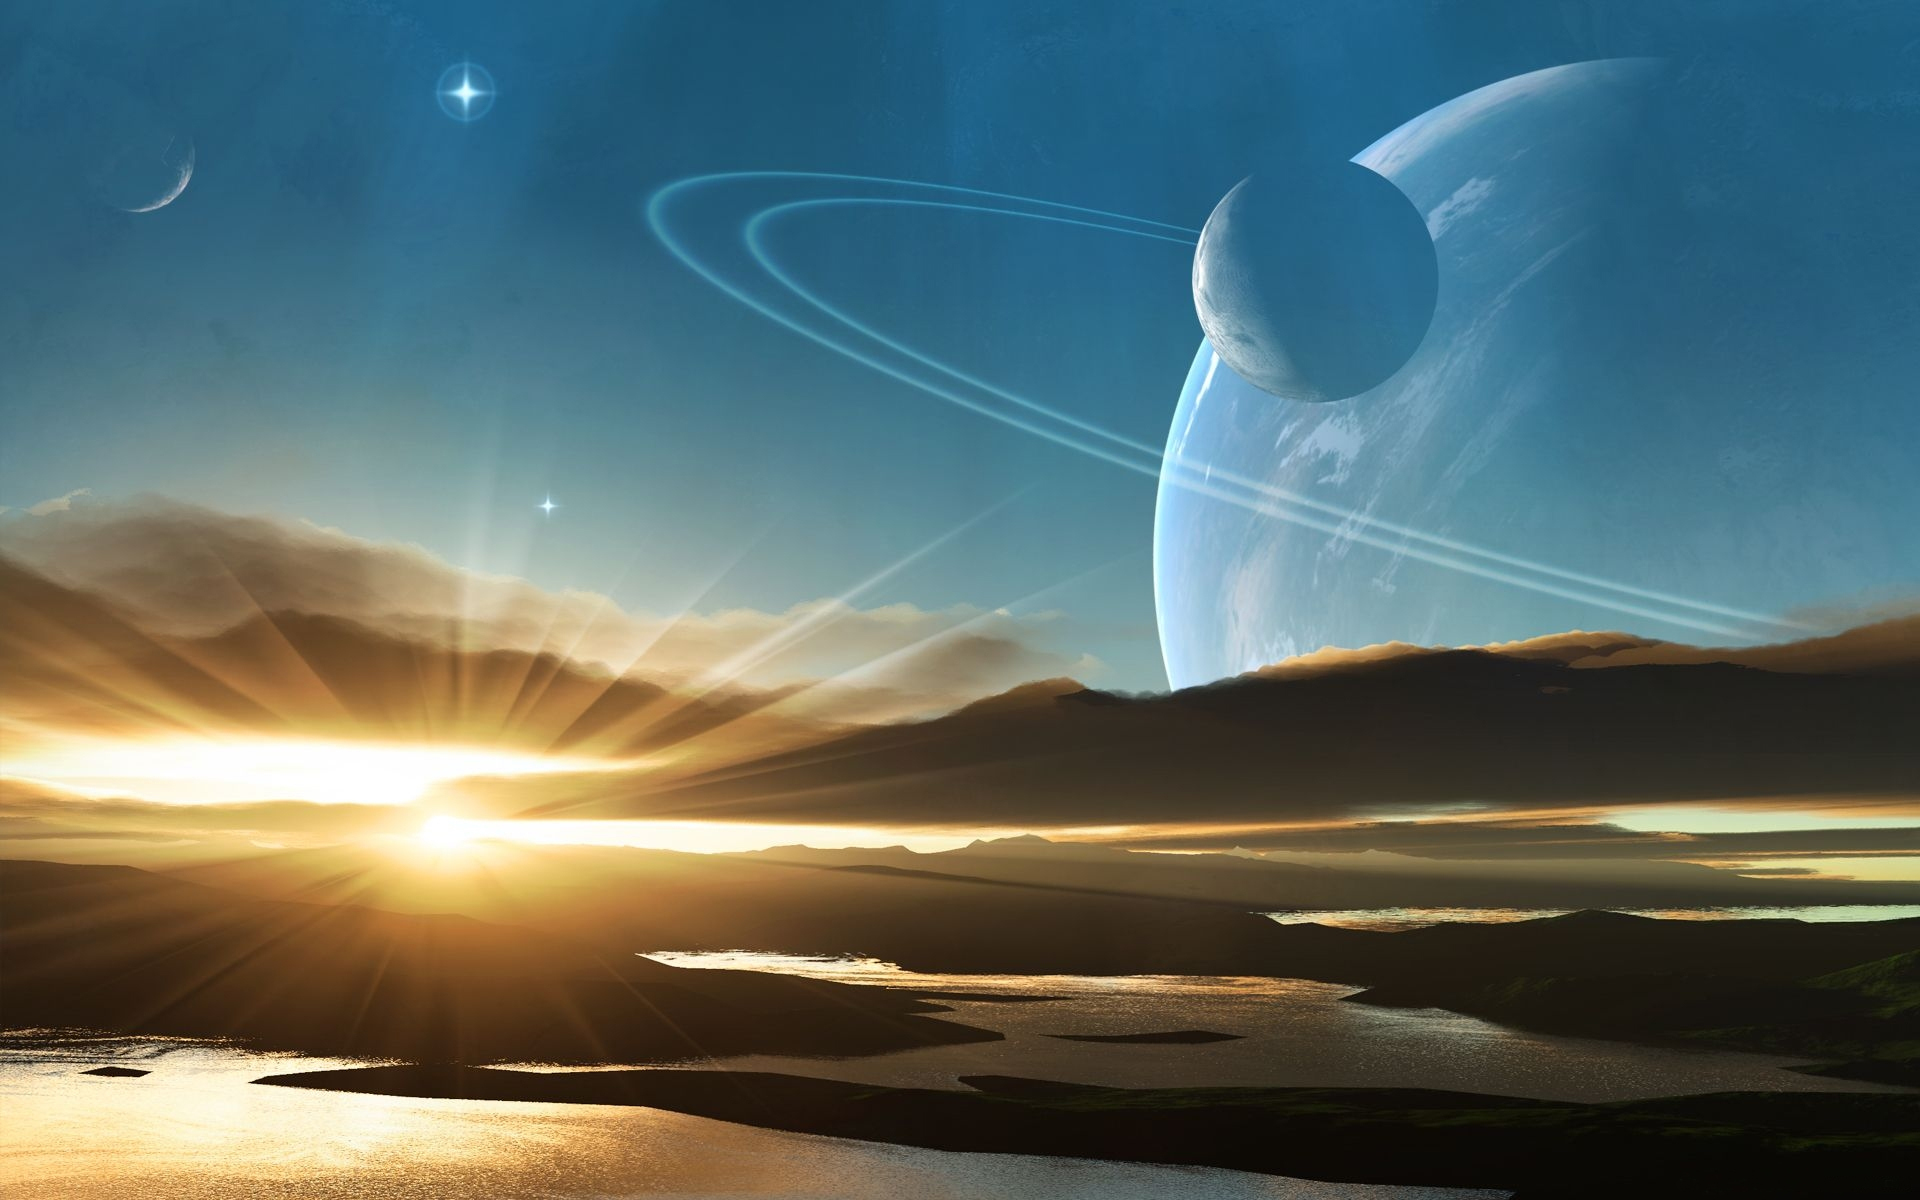 Обои Восход солнца над планетой картинки на рабочий стол на тему Космос - скачать без смс